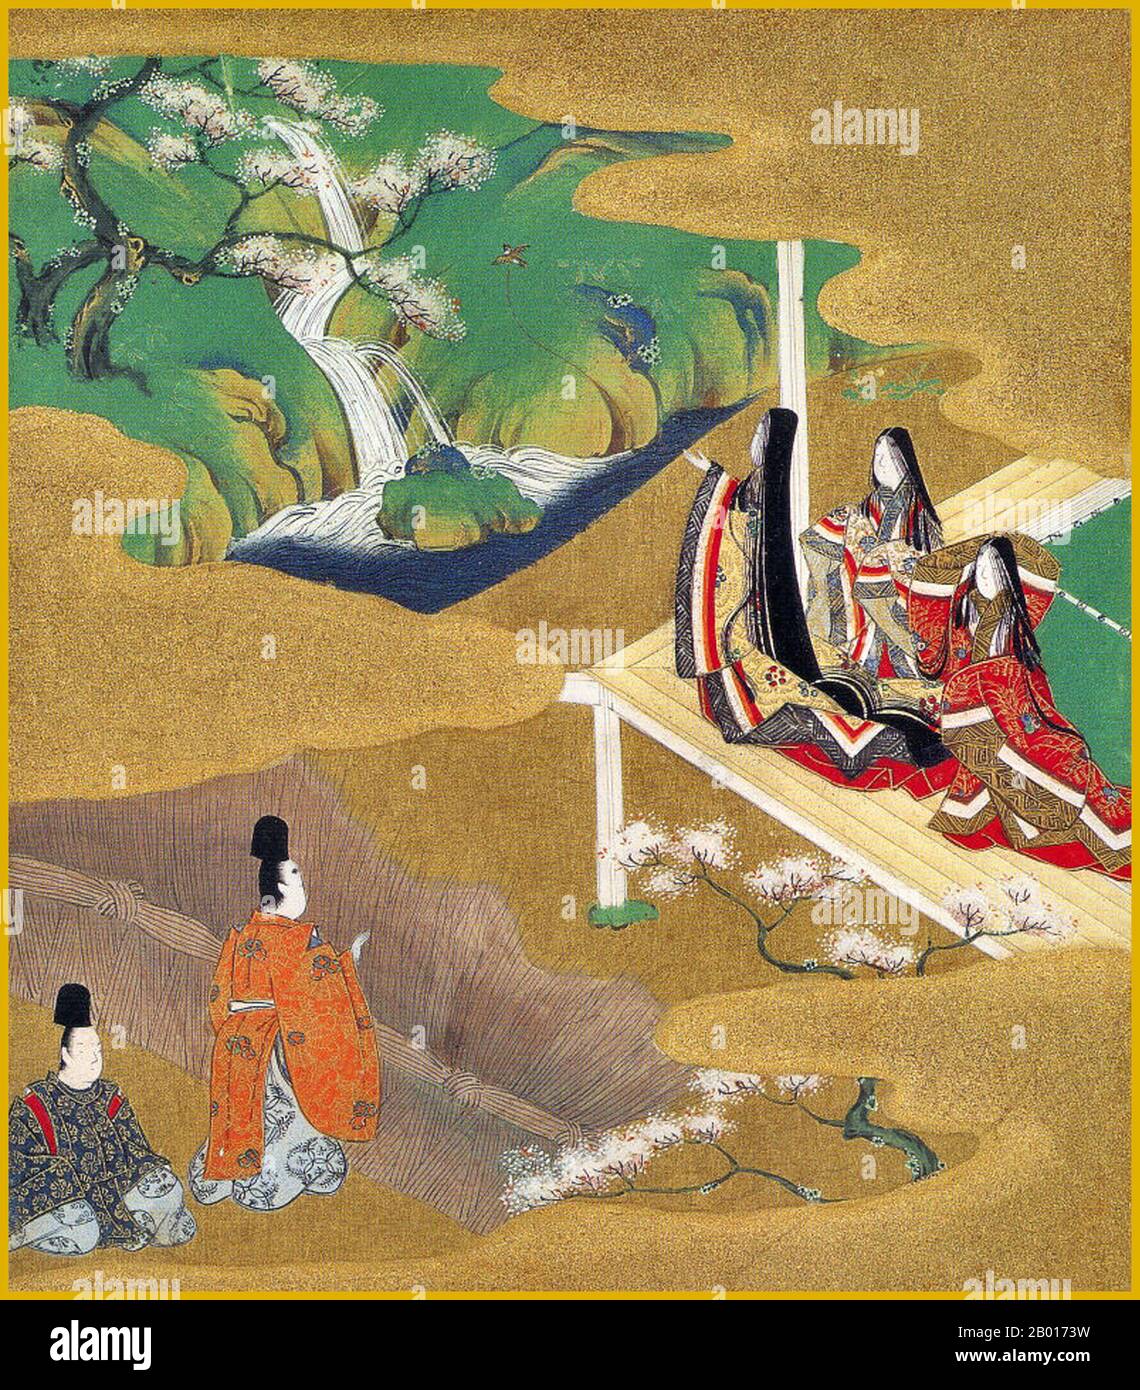 Japon: 'Chapitre 5 - Wakamurasaki (Young Murasaki)'.Illustration du Monogatari de Genji (Tale de Genji), par Tosa Mitsuoki (21 novembre 1617 – 14 novembre 1691), fin du XVIIe siècle.'Le Tale de Genji' est une oeuvre de la littérature japonaise classique du début du XIe siècle par une dame en attente Murasaki Shikibu.L'histoire raconte la vie de Hikaru Genji, le fils de l'empereur japonais, et dépeint les modes de vie des courtisans élevées pendant la période Heian.Il est considéré par certains comme le premier roman du monde, et a été écrit dans un style archaïque et poétique qui est maintenant presque illisible. Banque D'Images